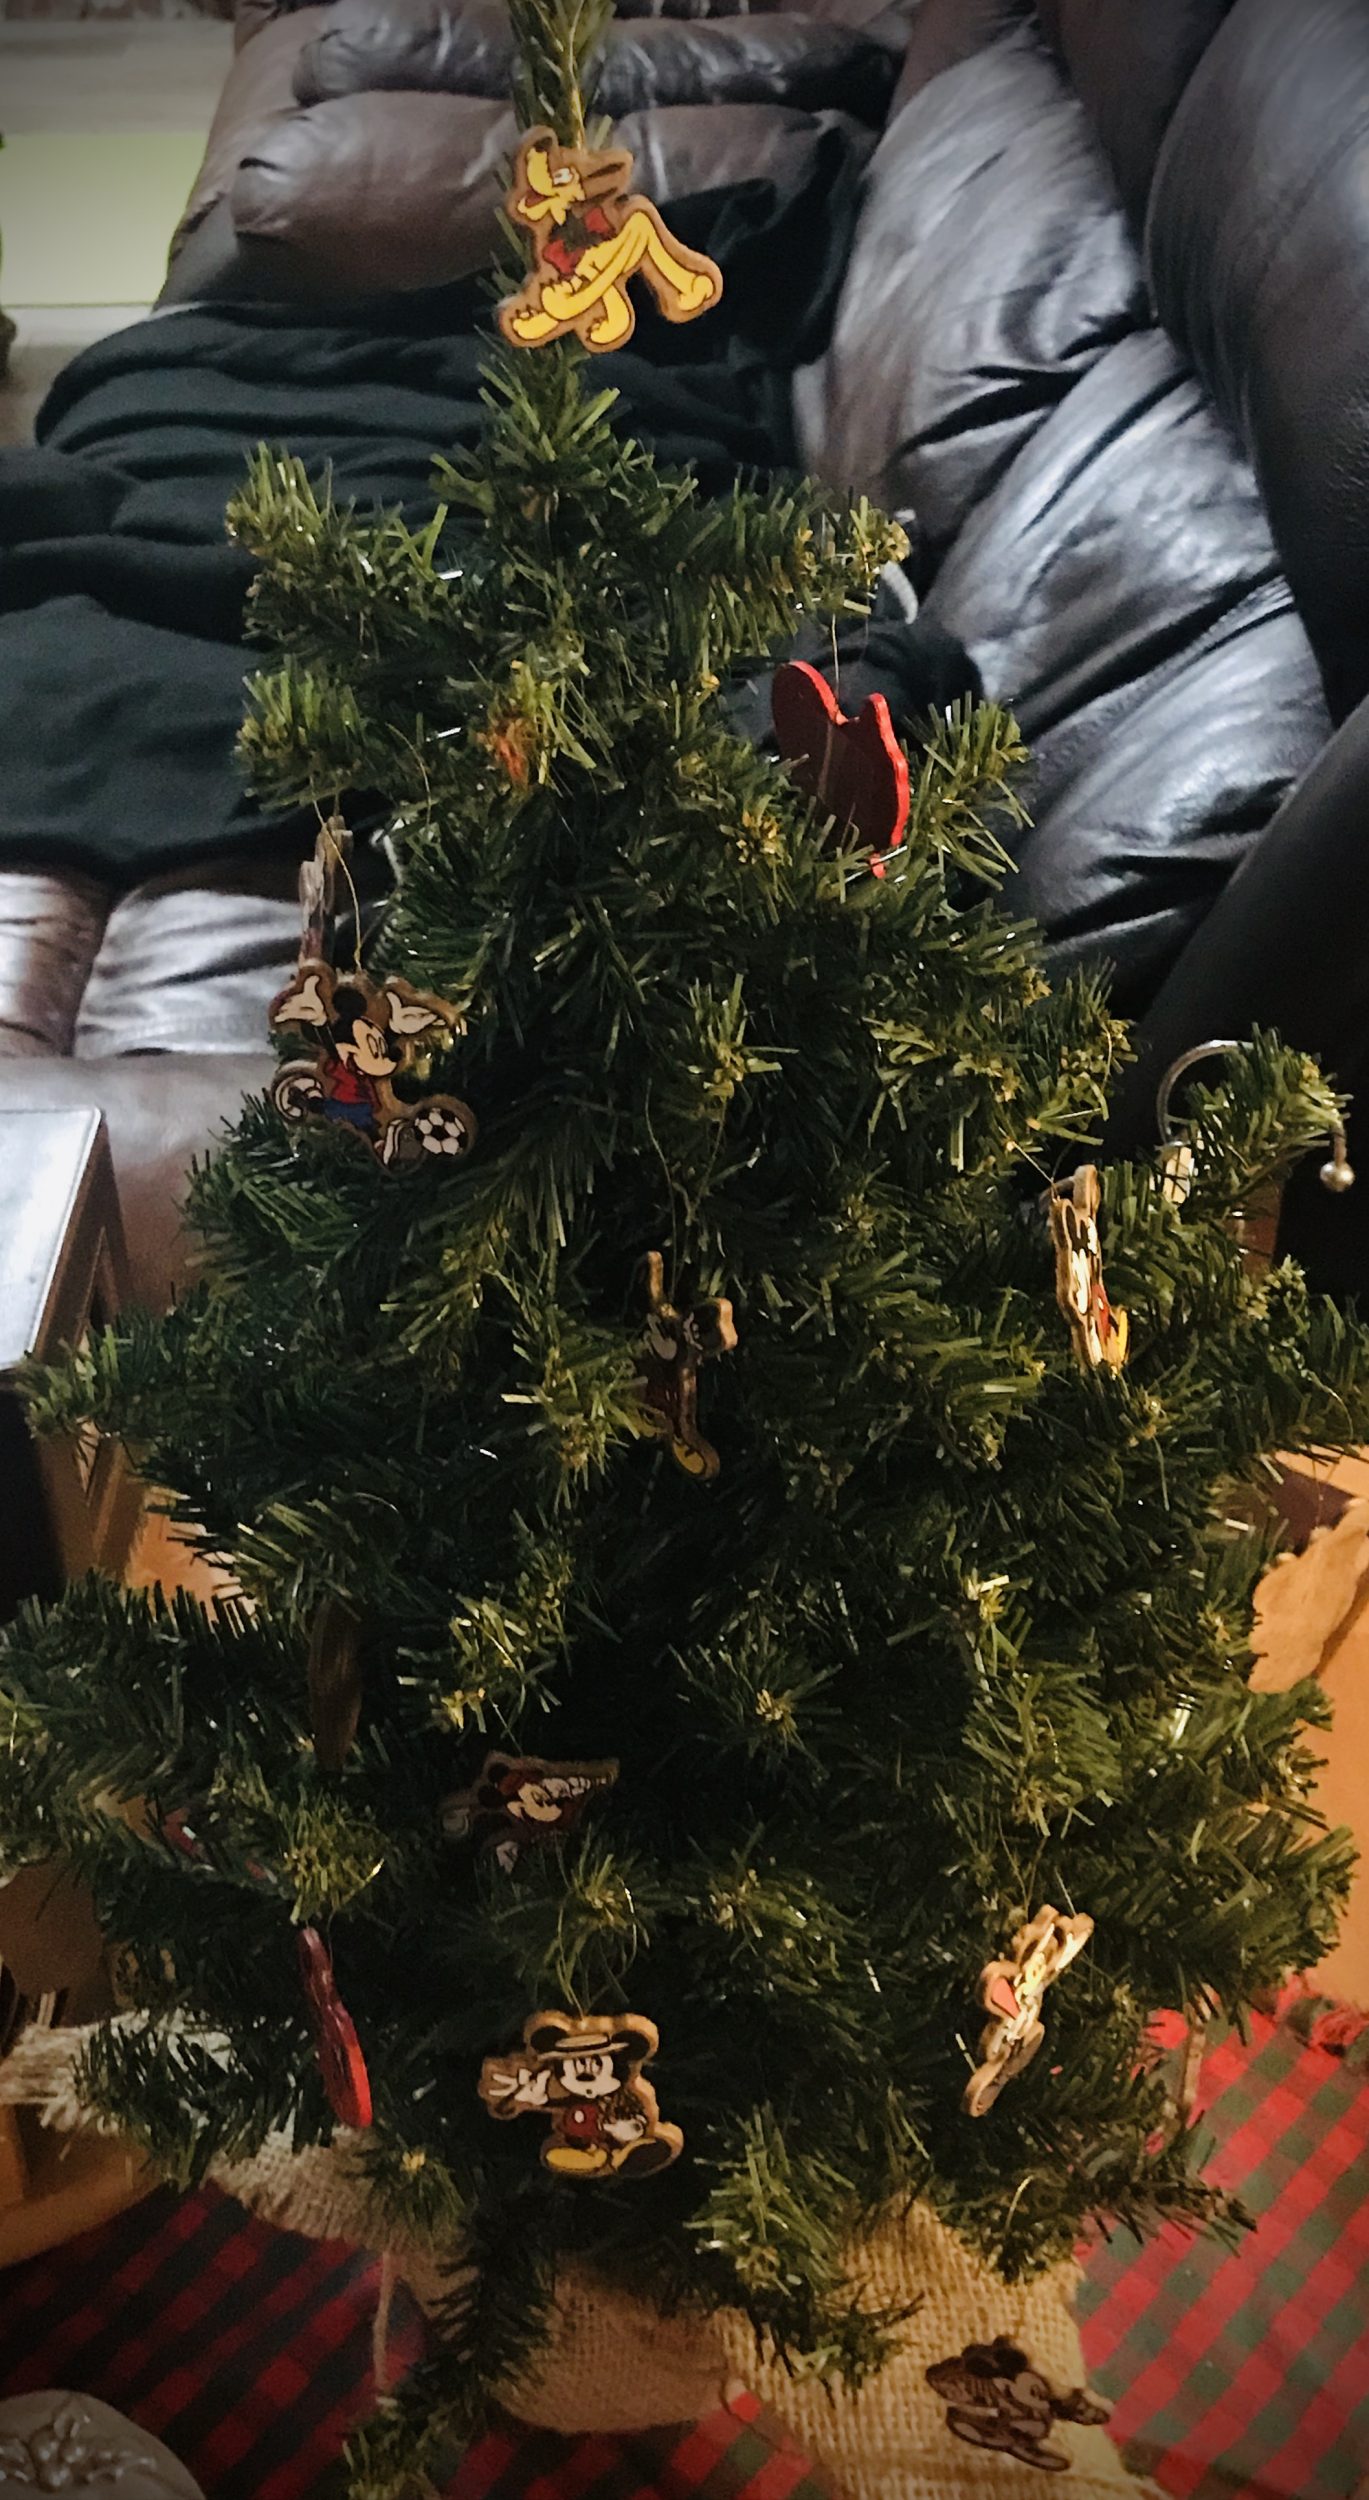 Tiny Christmas Tree with mini Disney wooden ornaments of Mickey, Minnie, Pluto, Goofy, Donald